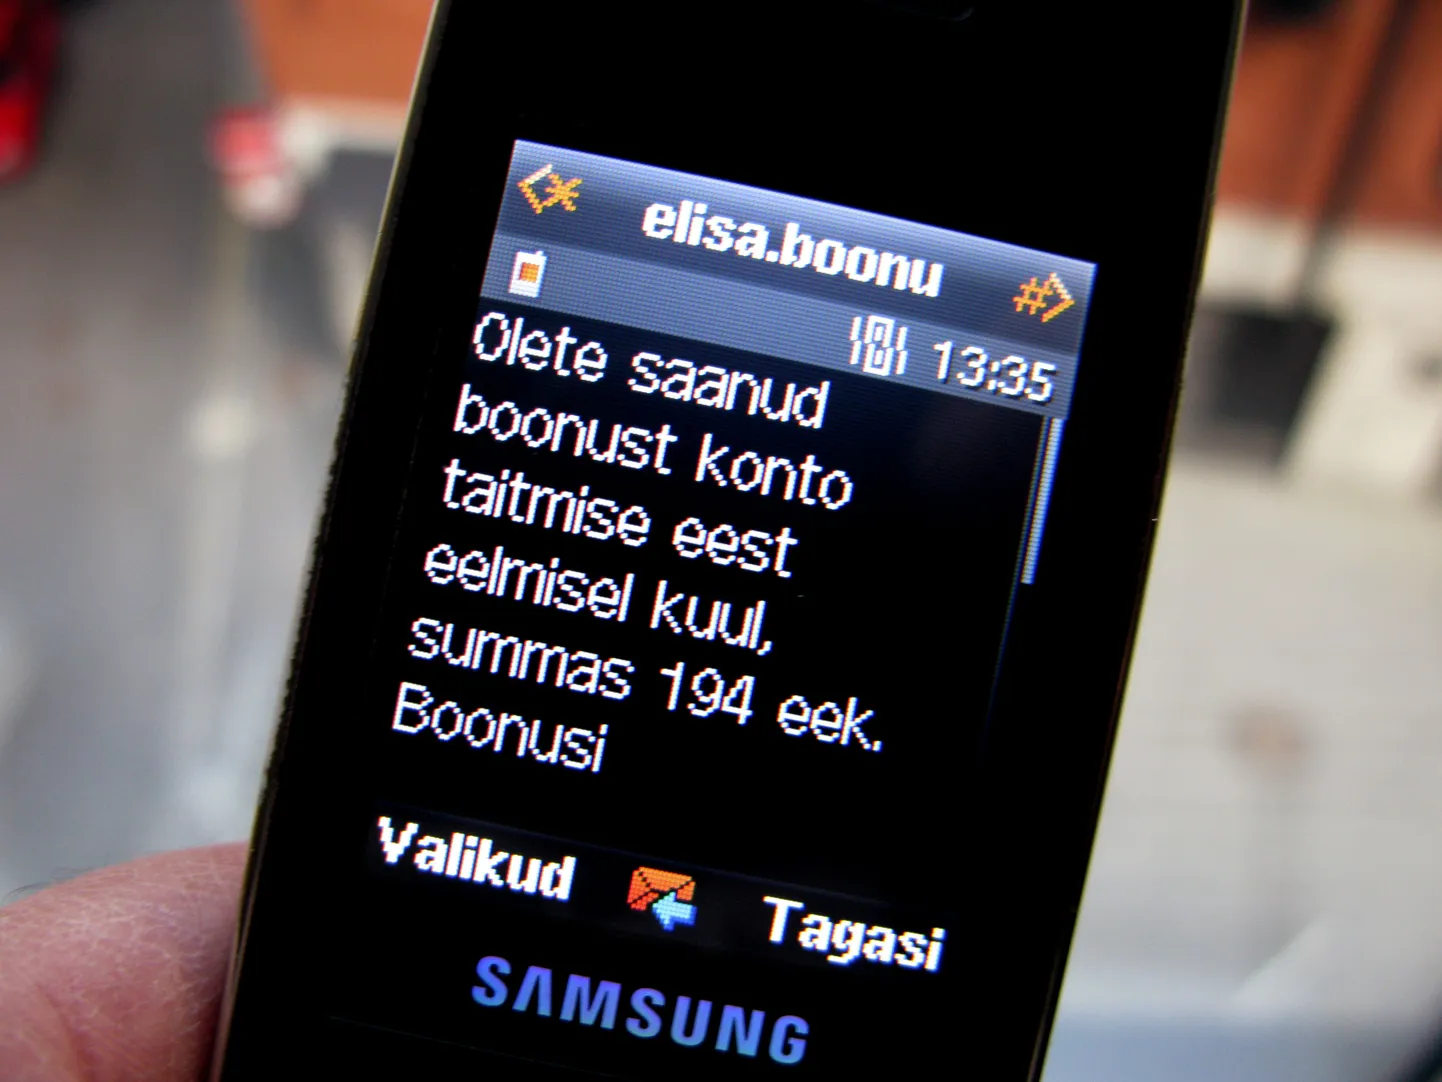 Мошенническая схема с использованием SMS-сообщений, практиковавшаяся в Эстонии.